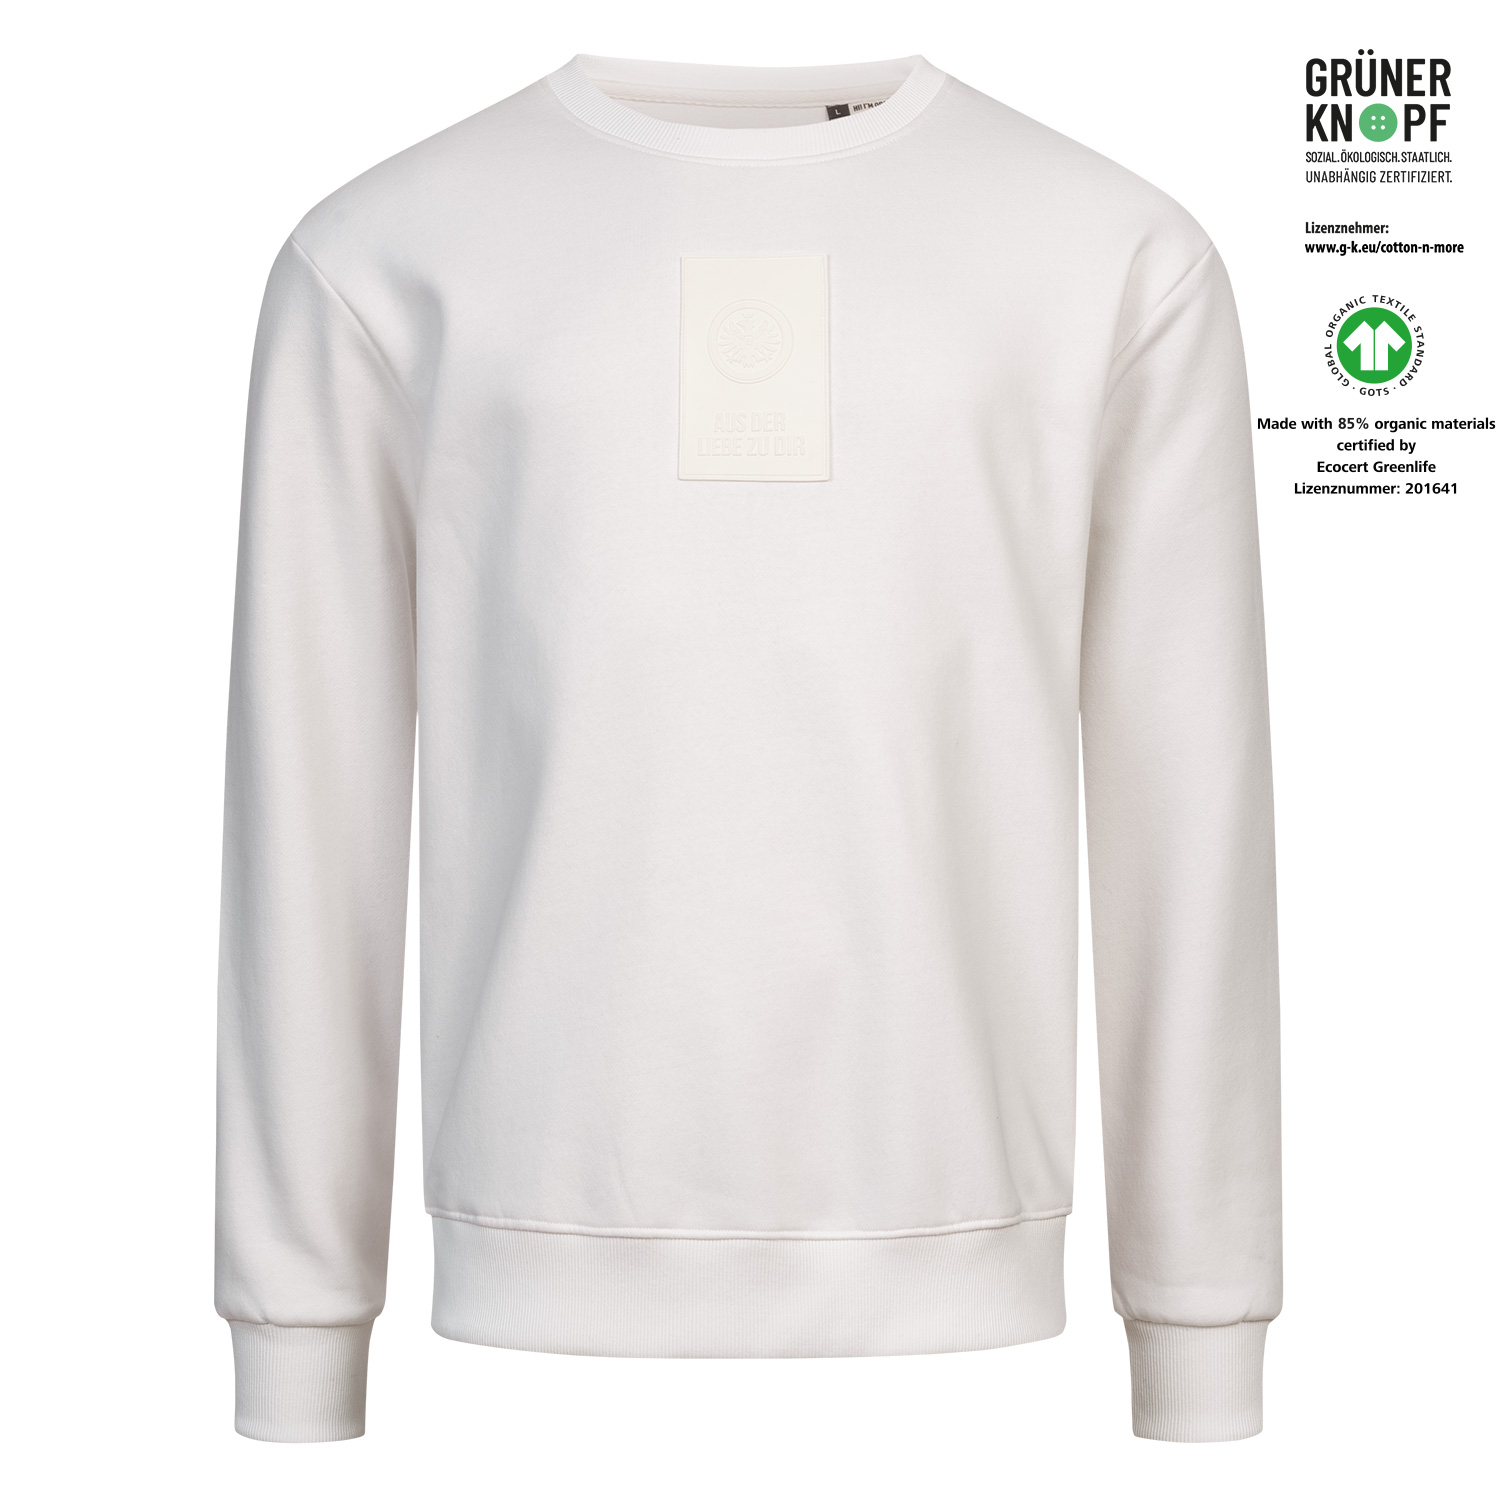 Bild 1: Sweater White Badge